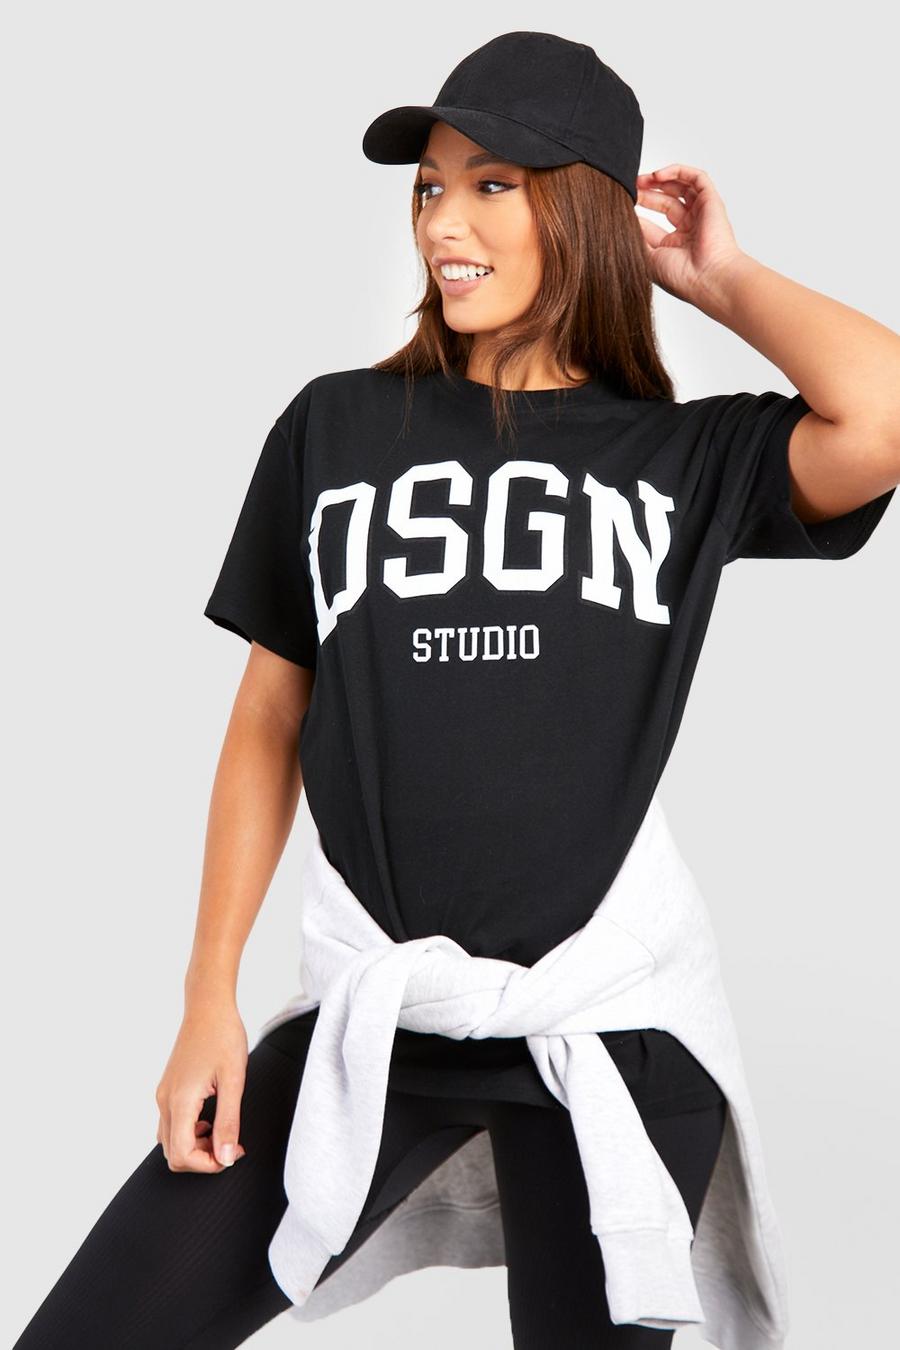 Tall Dsgn Studio T-shirt